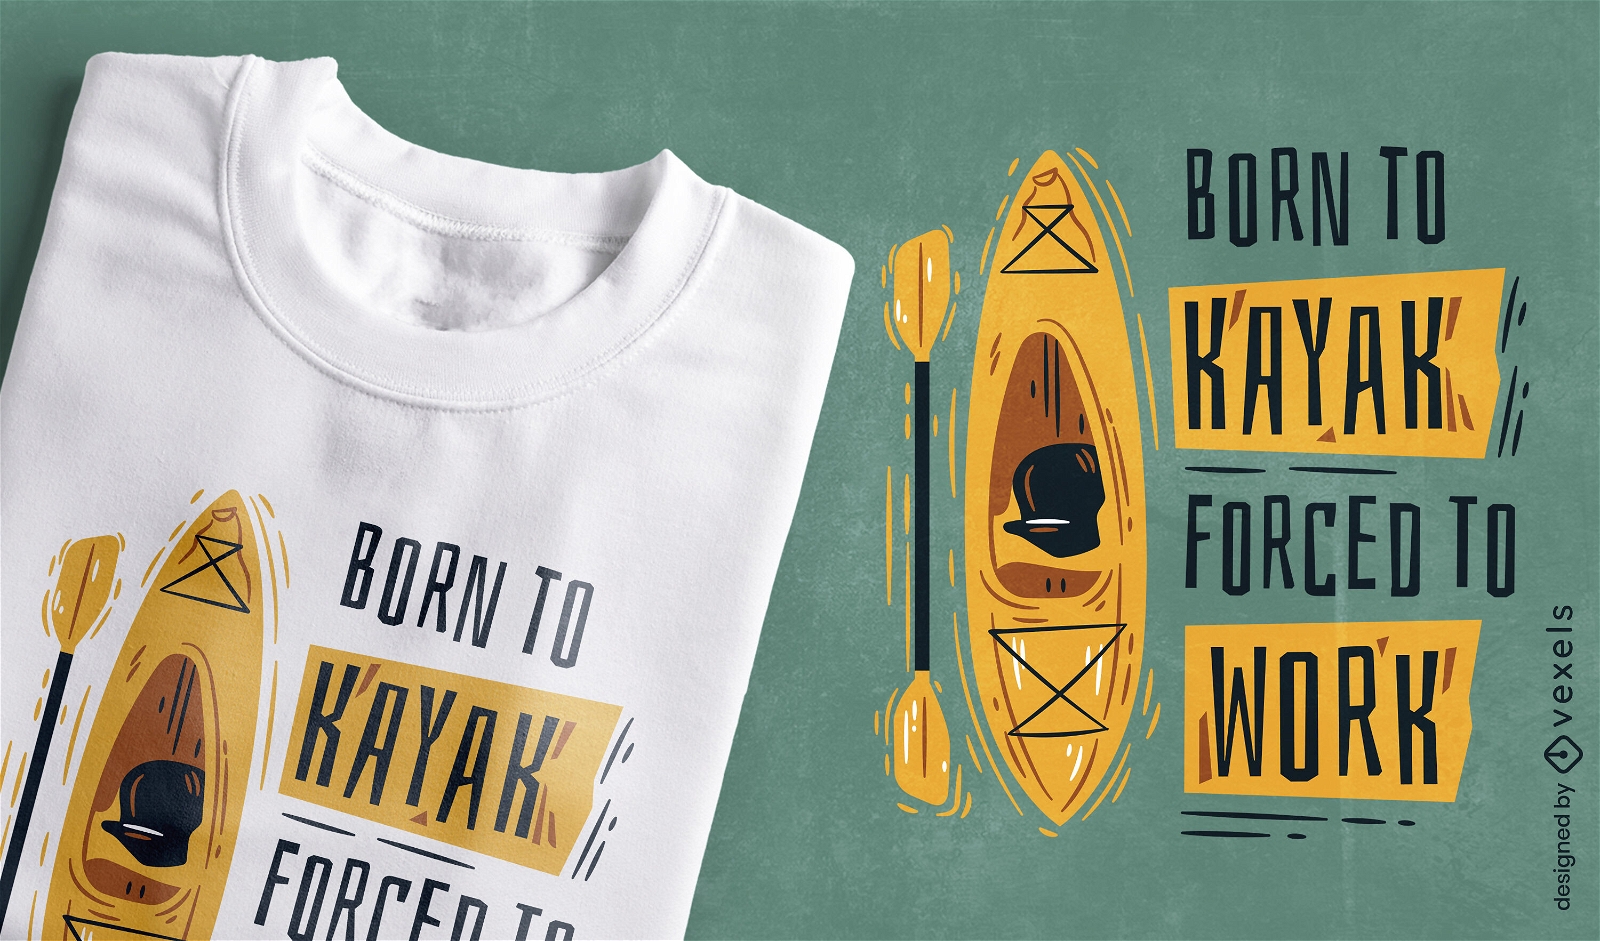 Dise?o divertido de camiseta nacido para kayak